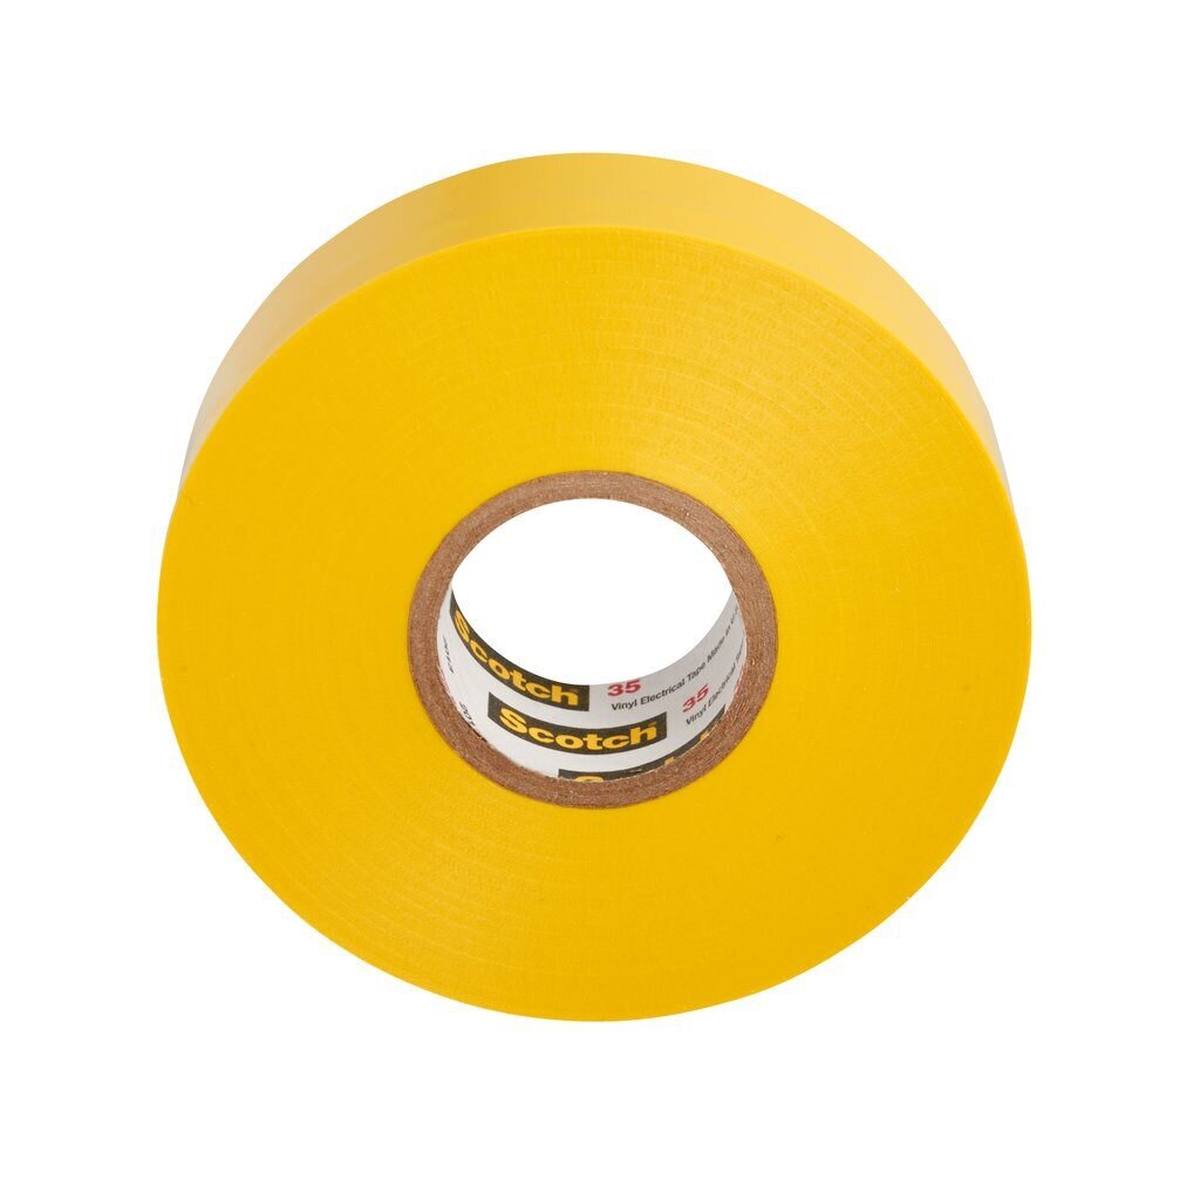 3M Ruban isolant électrique vinyle 35, jaune, 19 mm x 20 m, 0,18 mm